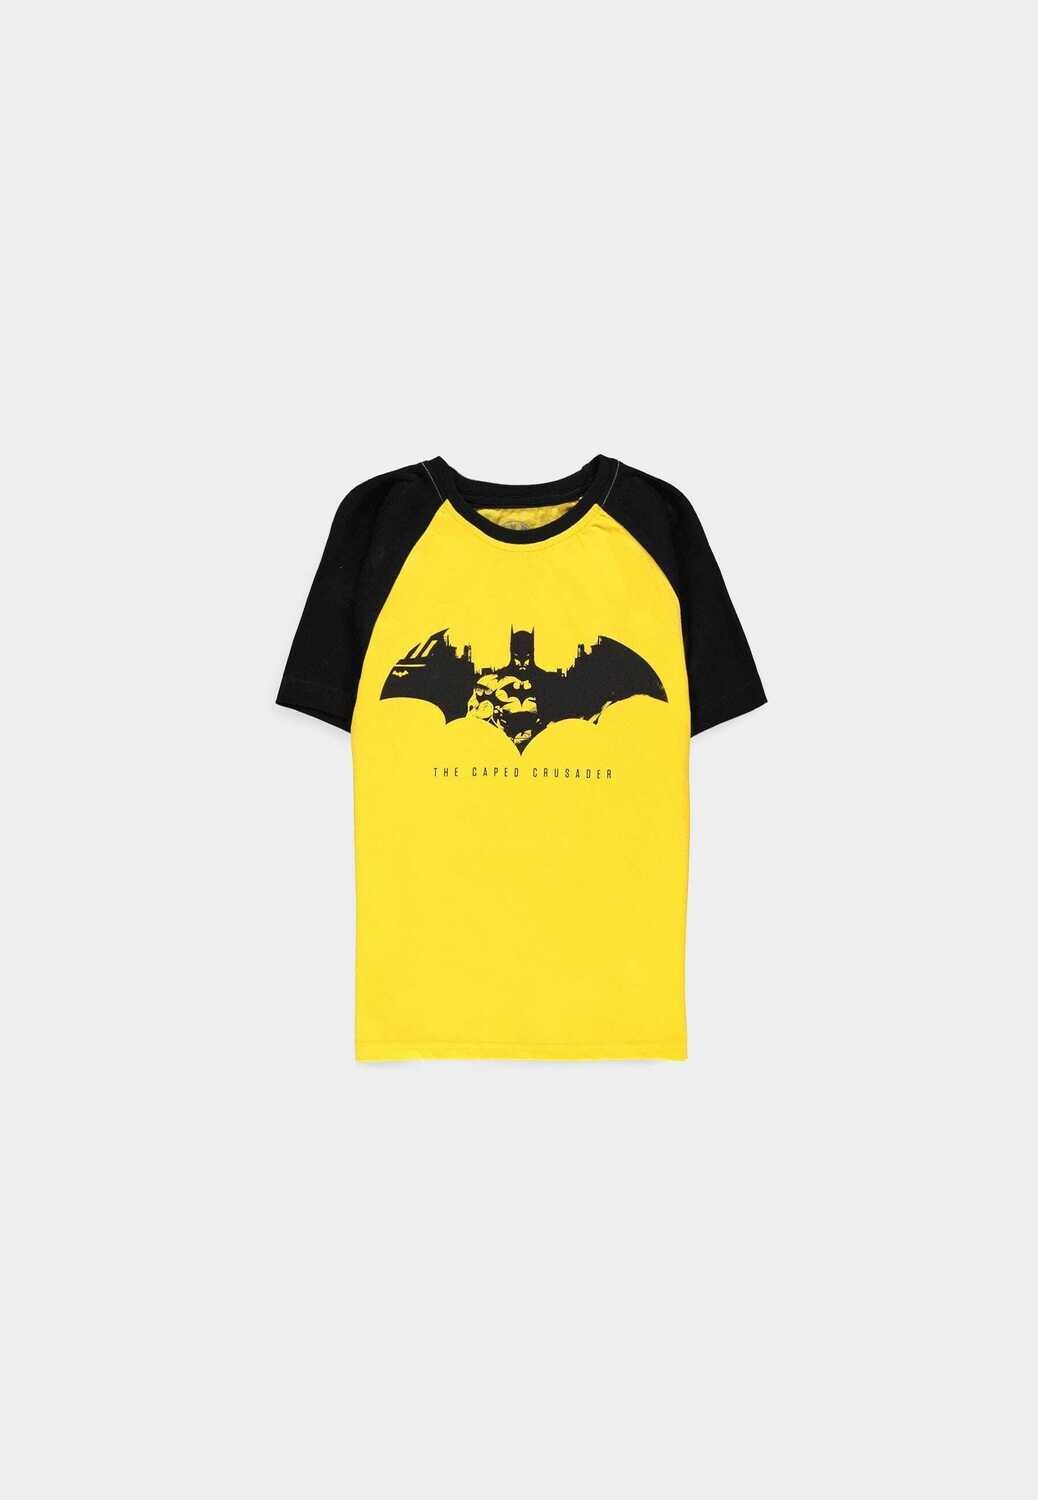 Warner - Batman - Caped Crusader Boys T-shirt